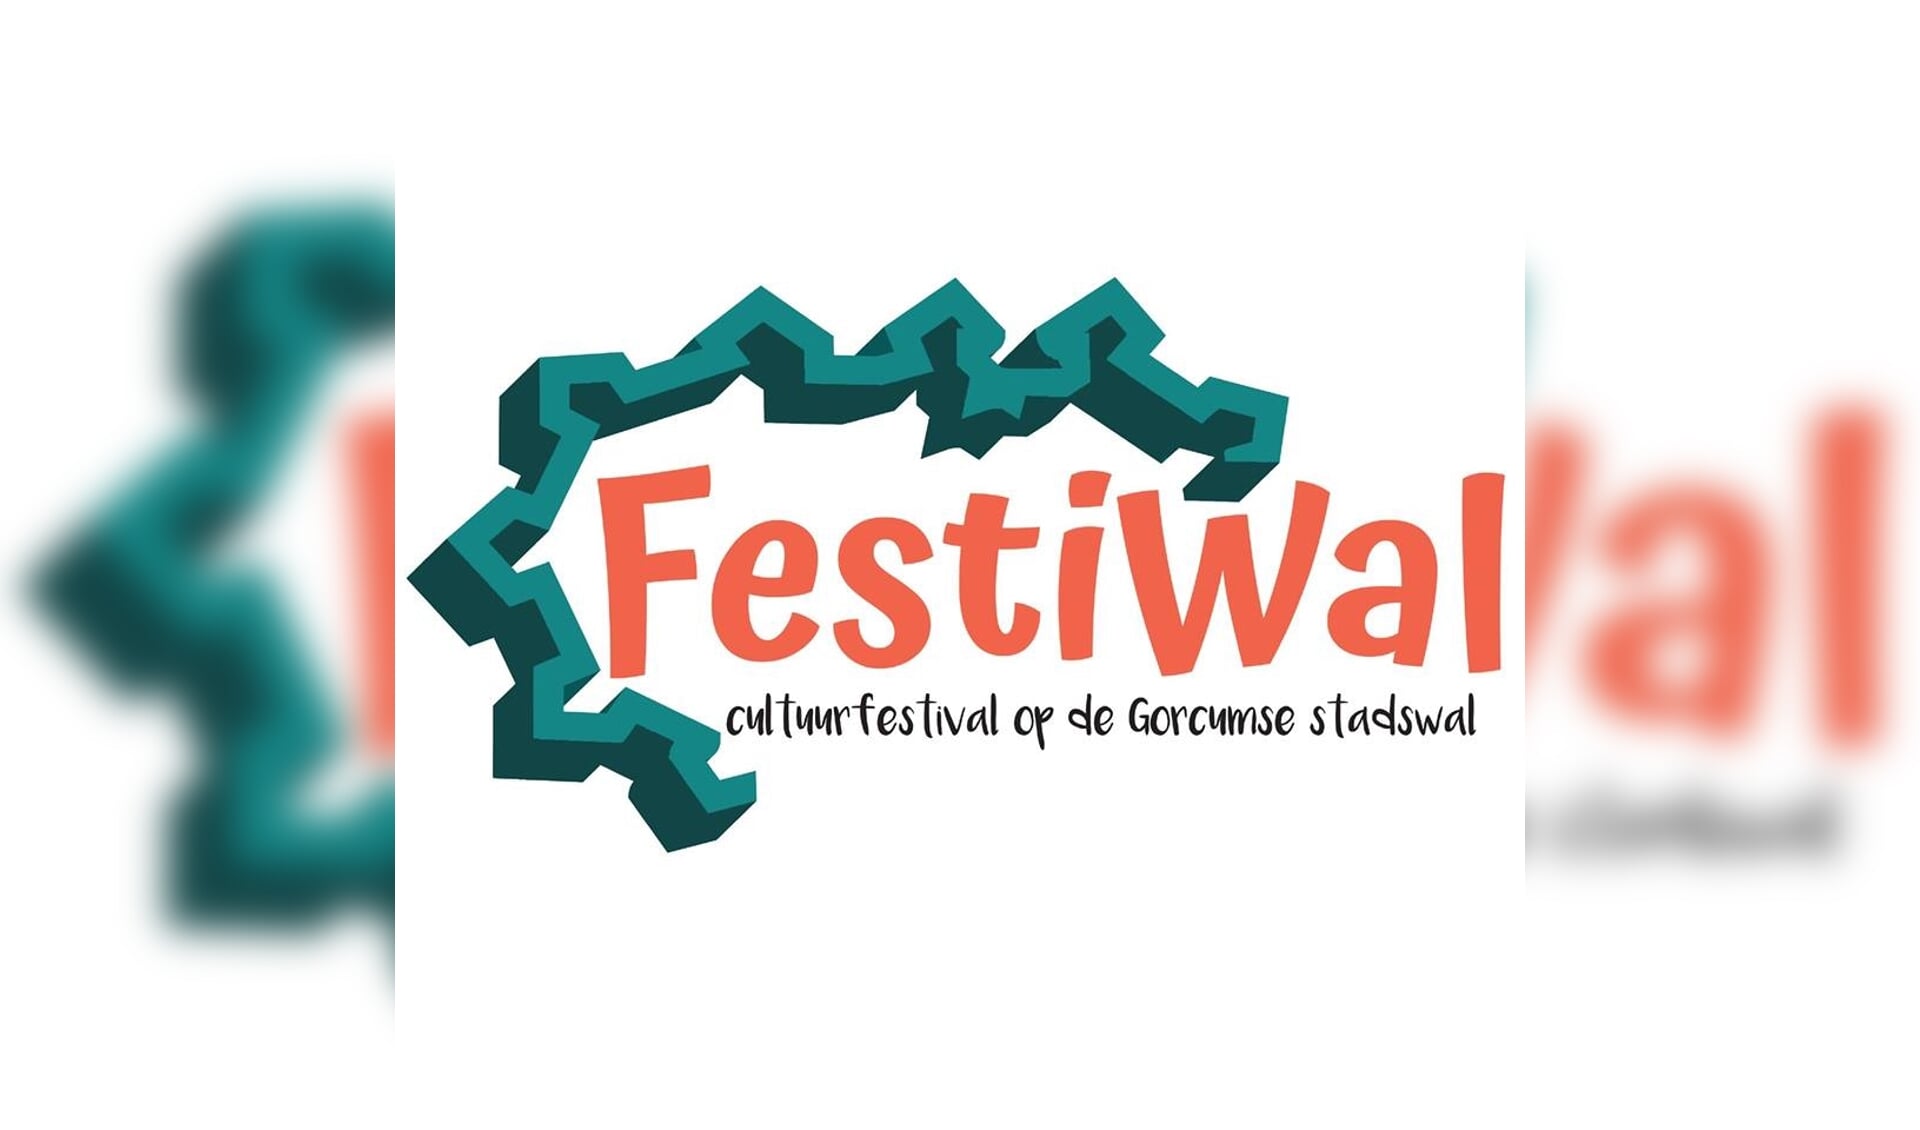 FestiWal is nieuw in Gorinchem. Kamal hoopt op veel bezoekers.